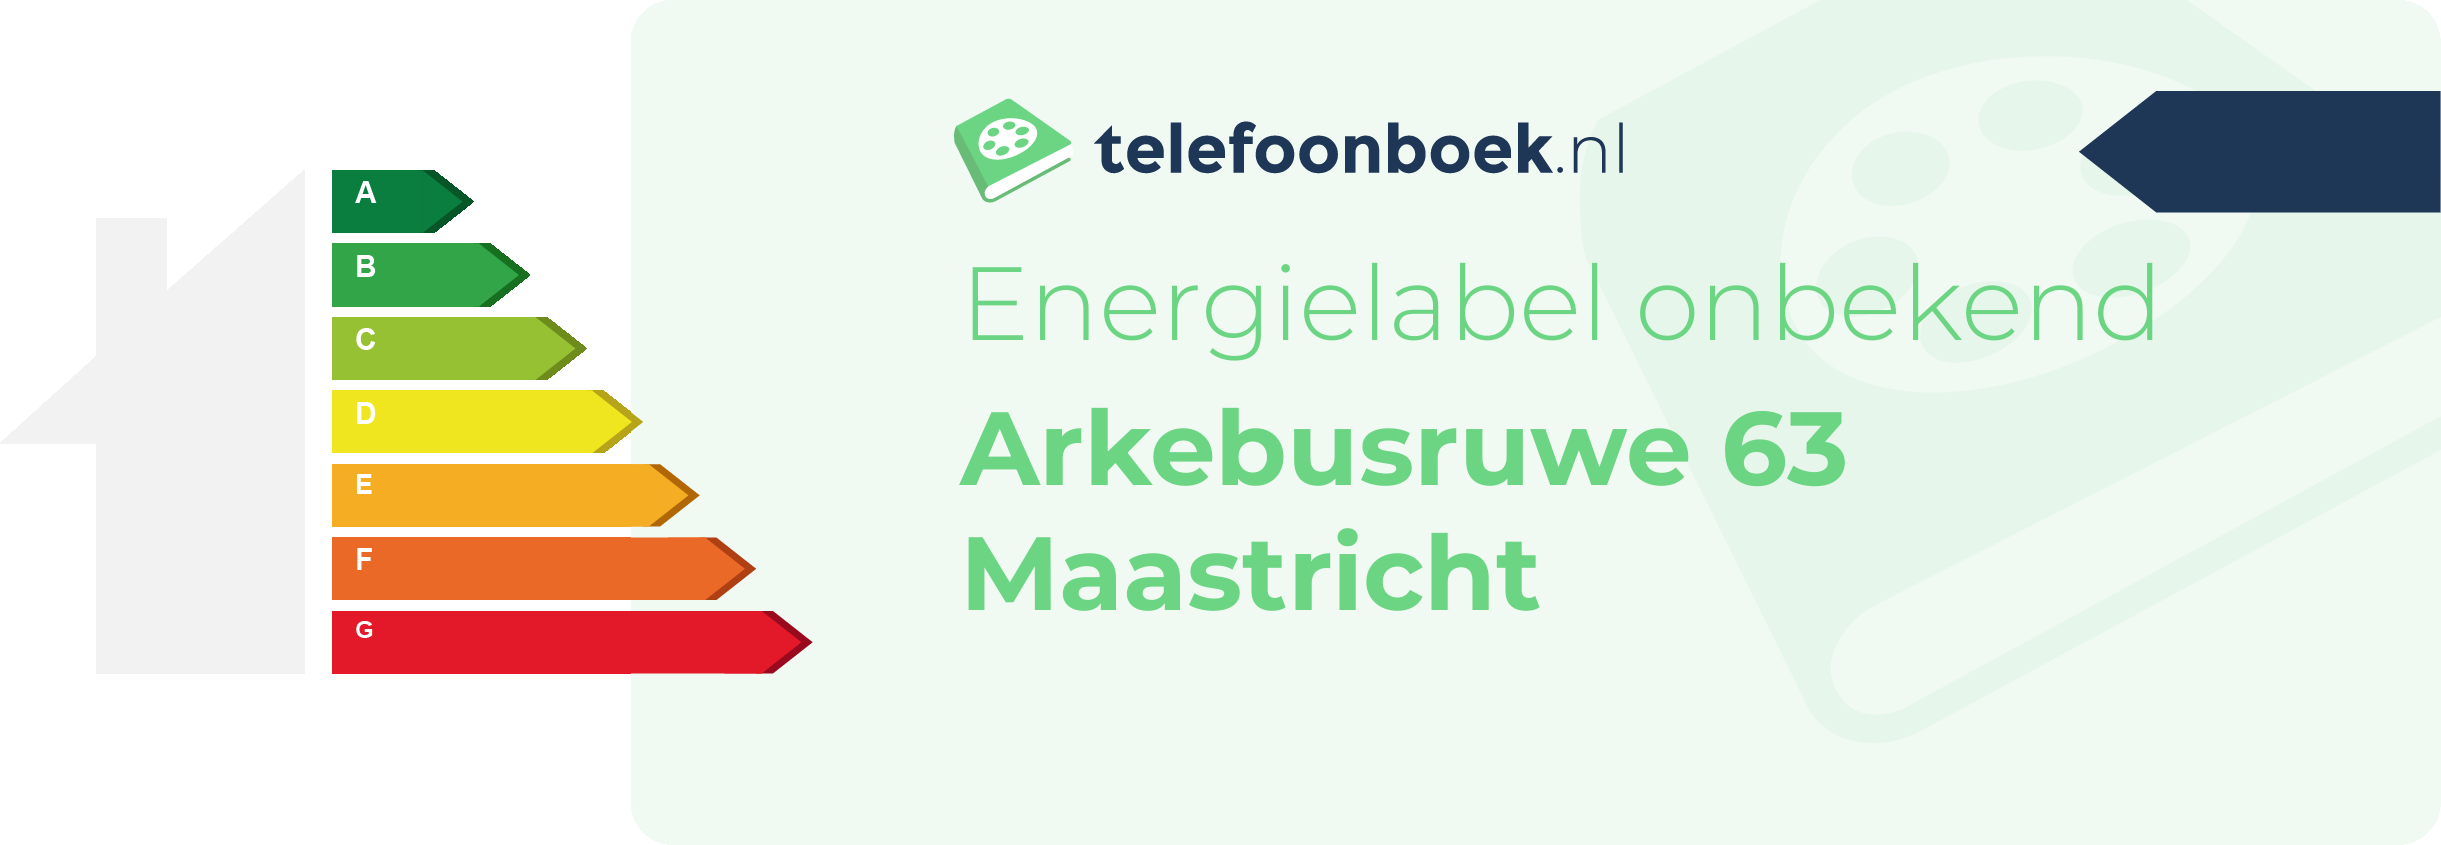 Energielabel Arkebusruwe 63 Maastricht